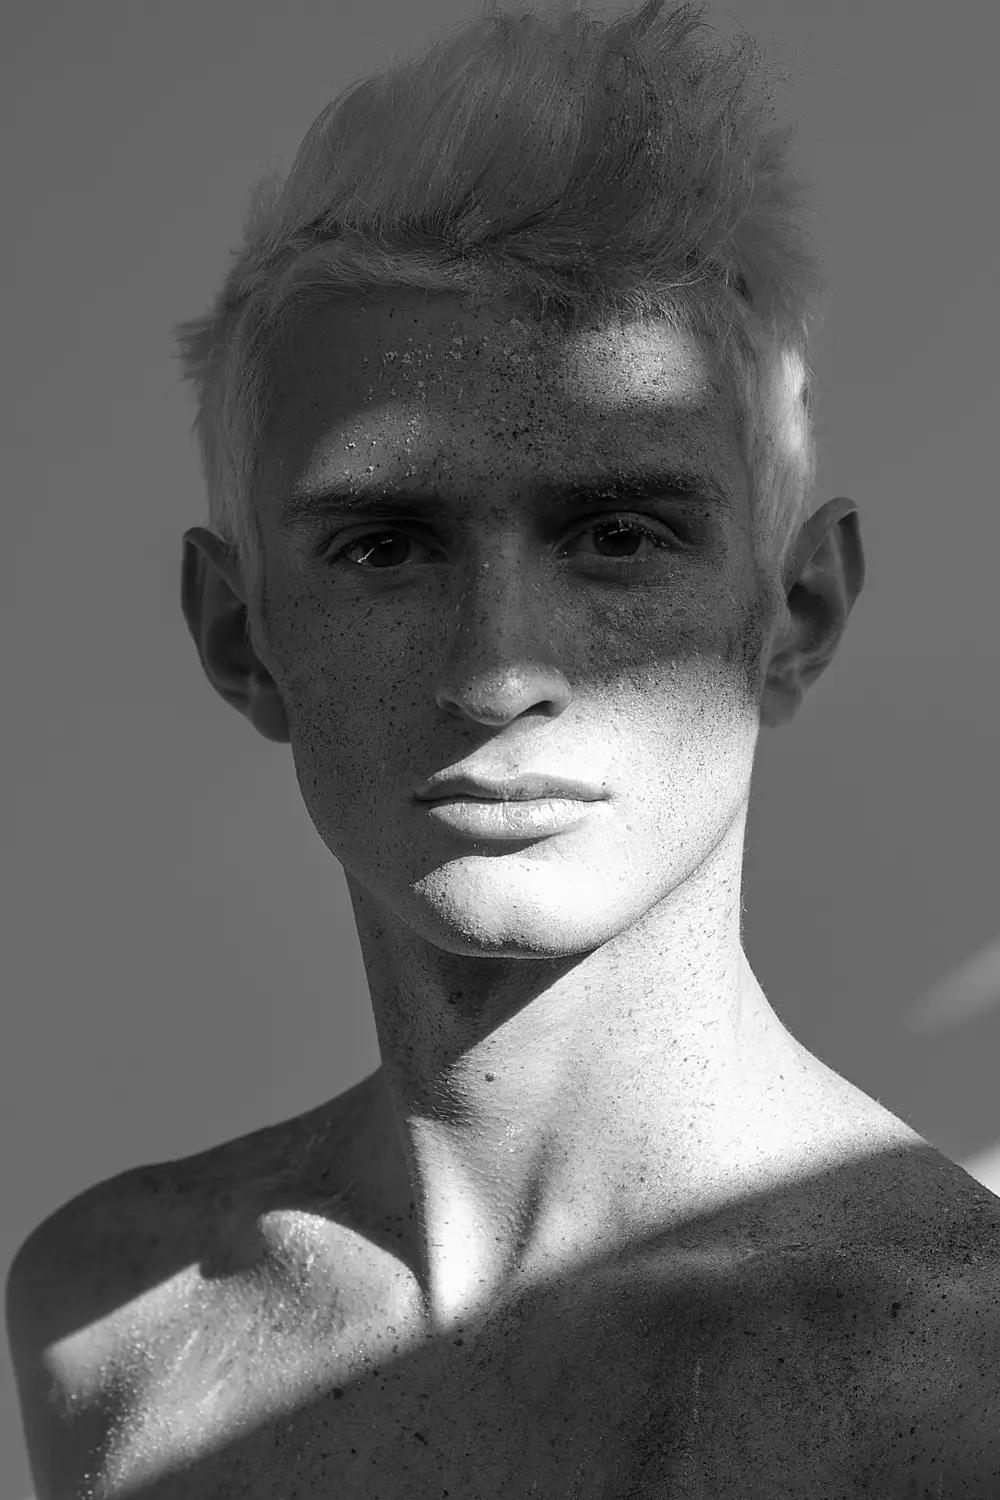 Чилийн гэрэл зурагчин Рене де ла Крузын авсан шинэ царайтай Адриан Немитэй туршилтын зураг авалт. Нүүр будалт, үс засалт: Тобиас Севилья